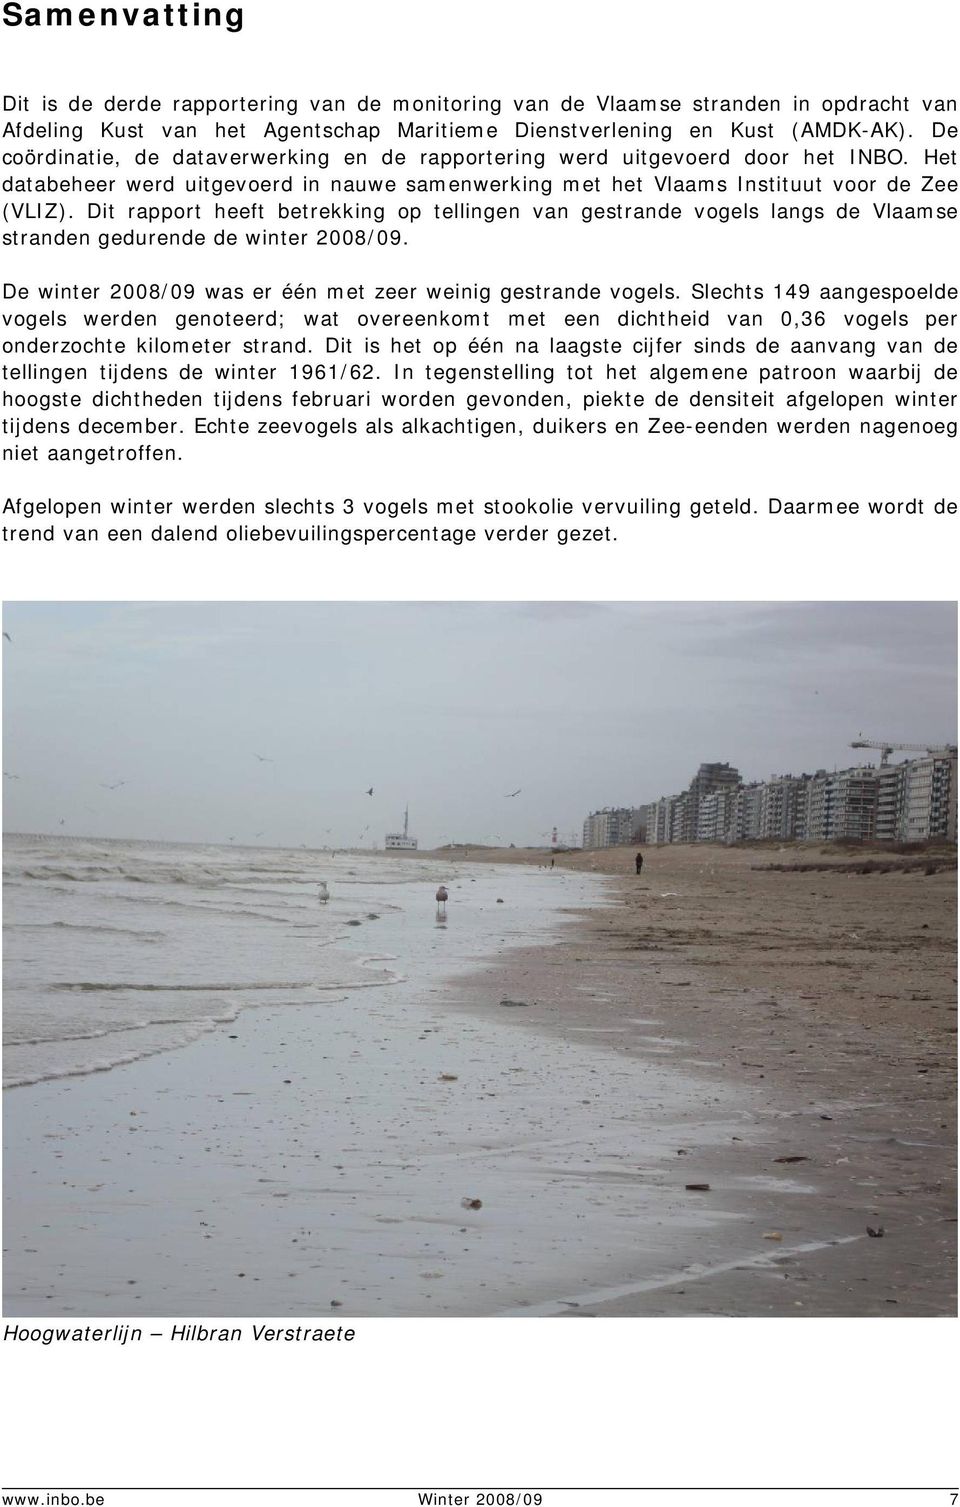 Dit rapport heeft betrekking op tellingen van gestrande vogels langs de Vlaamse stranden gedurende de winter 2008/09. De winter 2008/09 was er één met zeer weinig gestrande vogels.